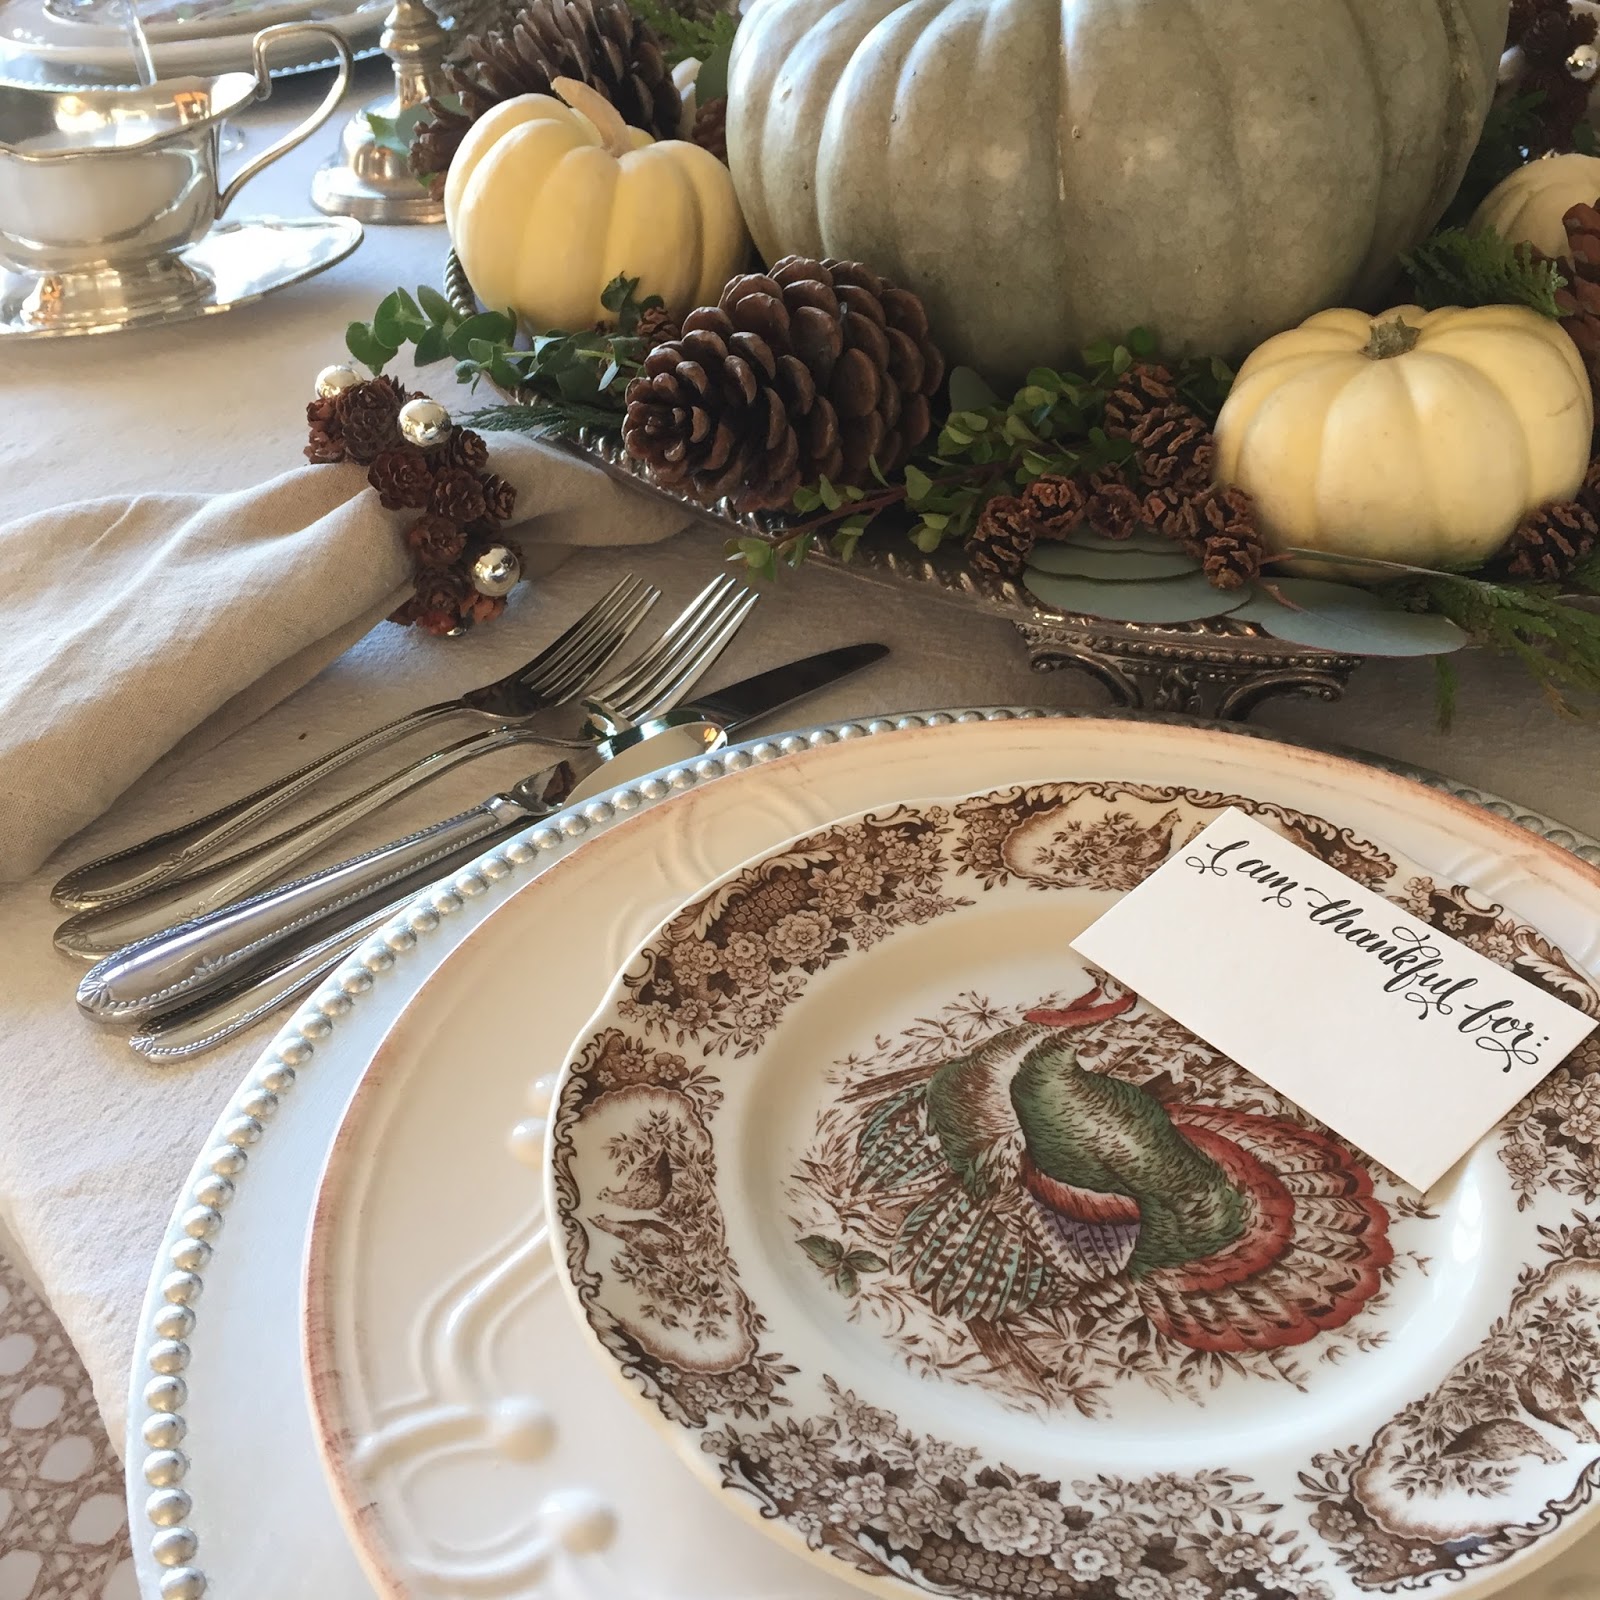 Maison de Cinq: Thanksgiving Tablescape with Pinecones and Pumpkins